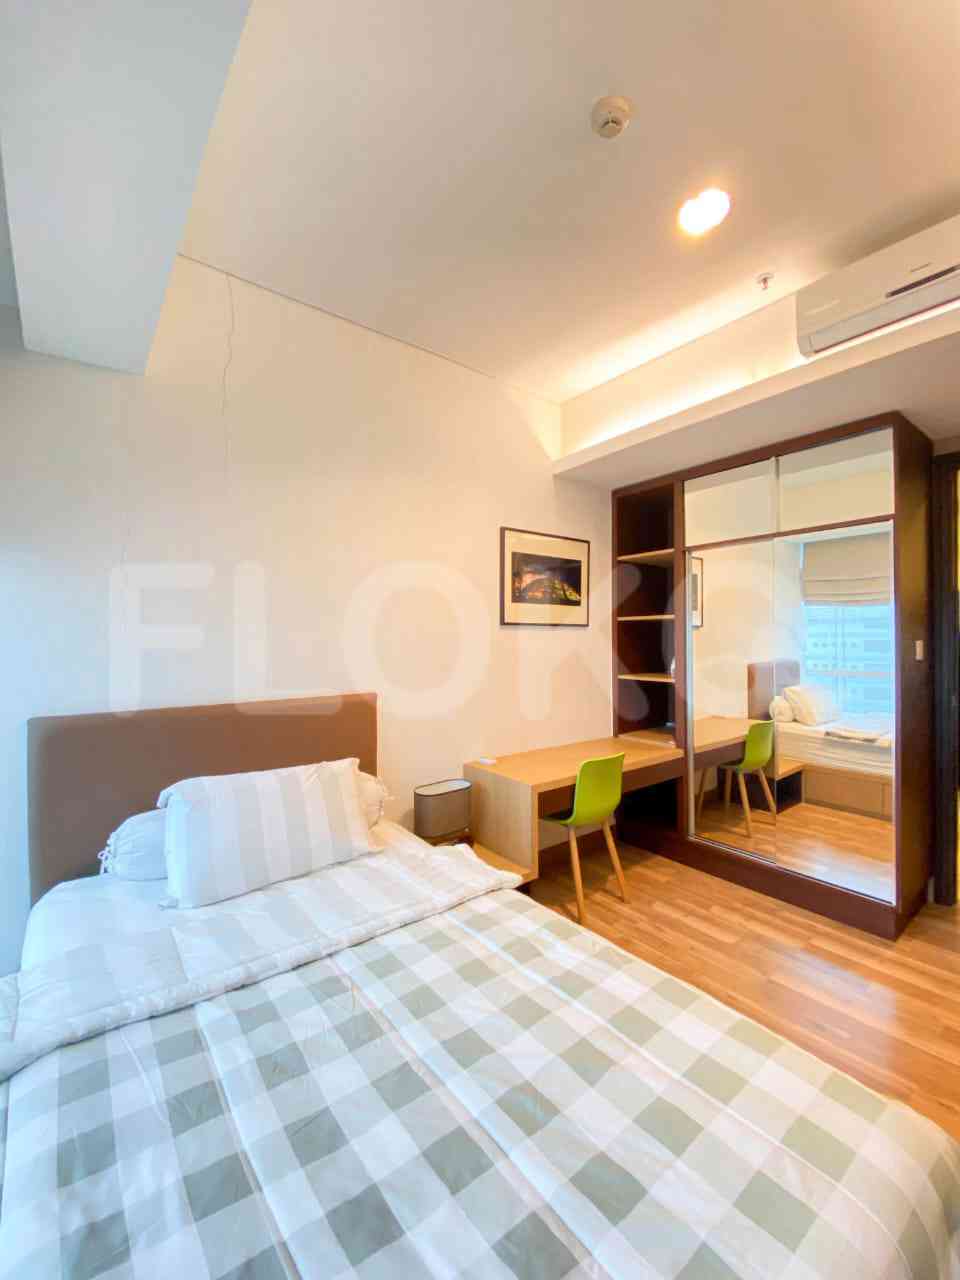 2 Bedroom on 17th Floor for Rent in Sky Garden - fse43f 4